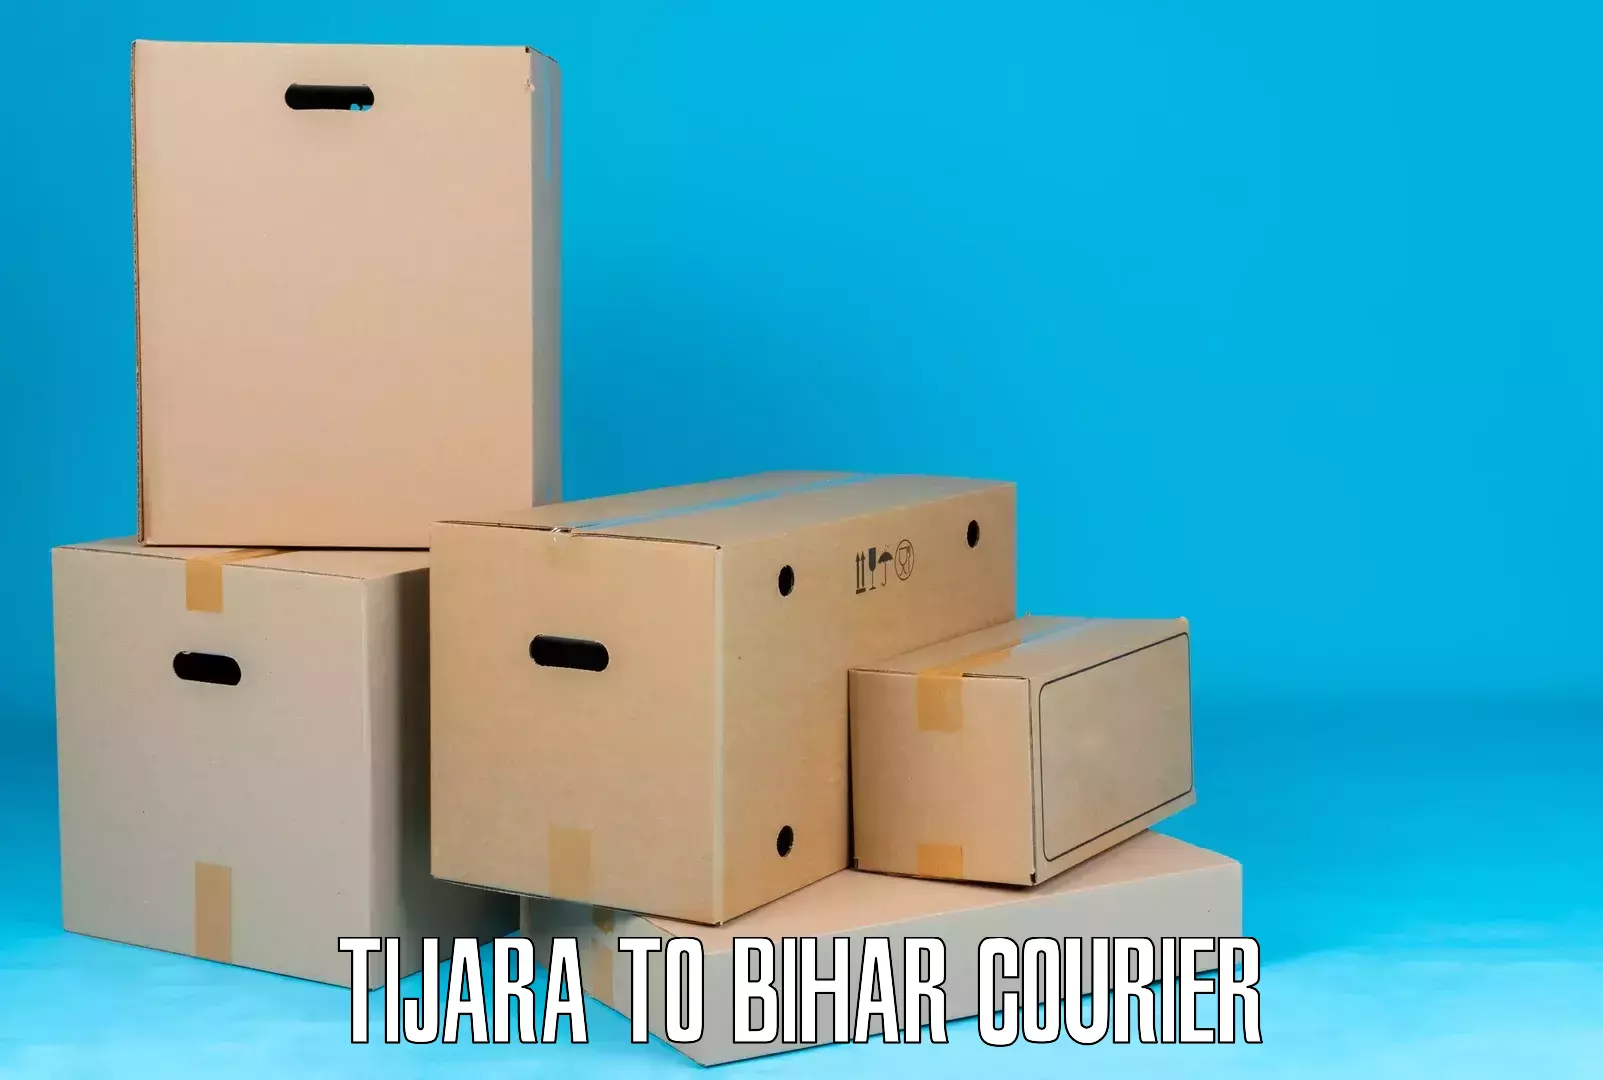 Tech-enabled shipping in Tijara to Runni Saidpur